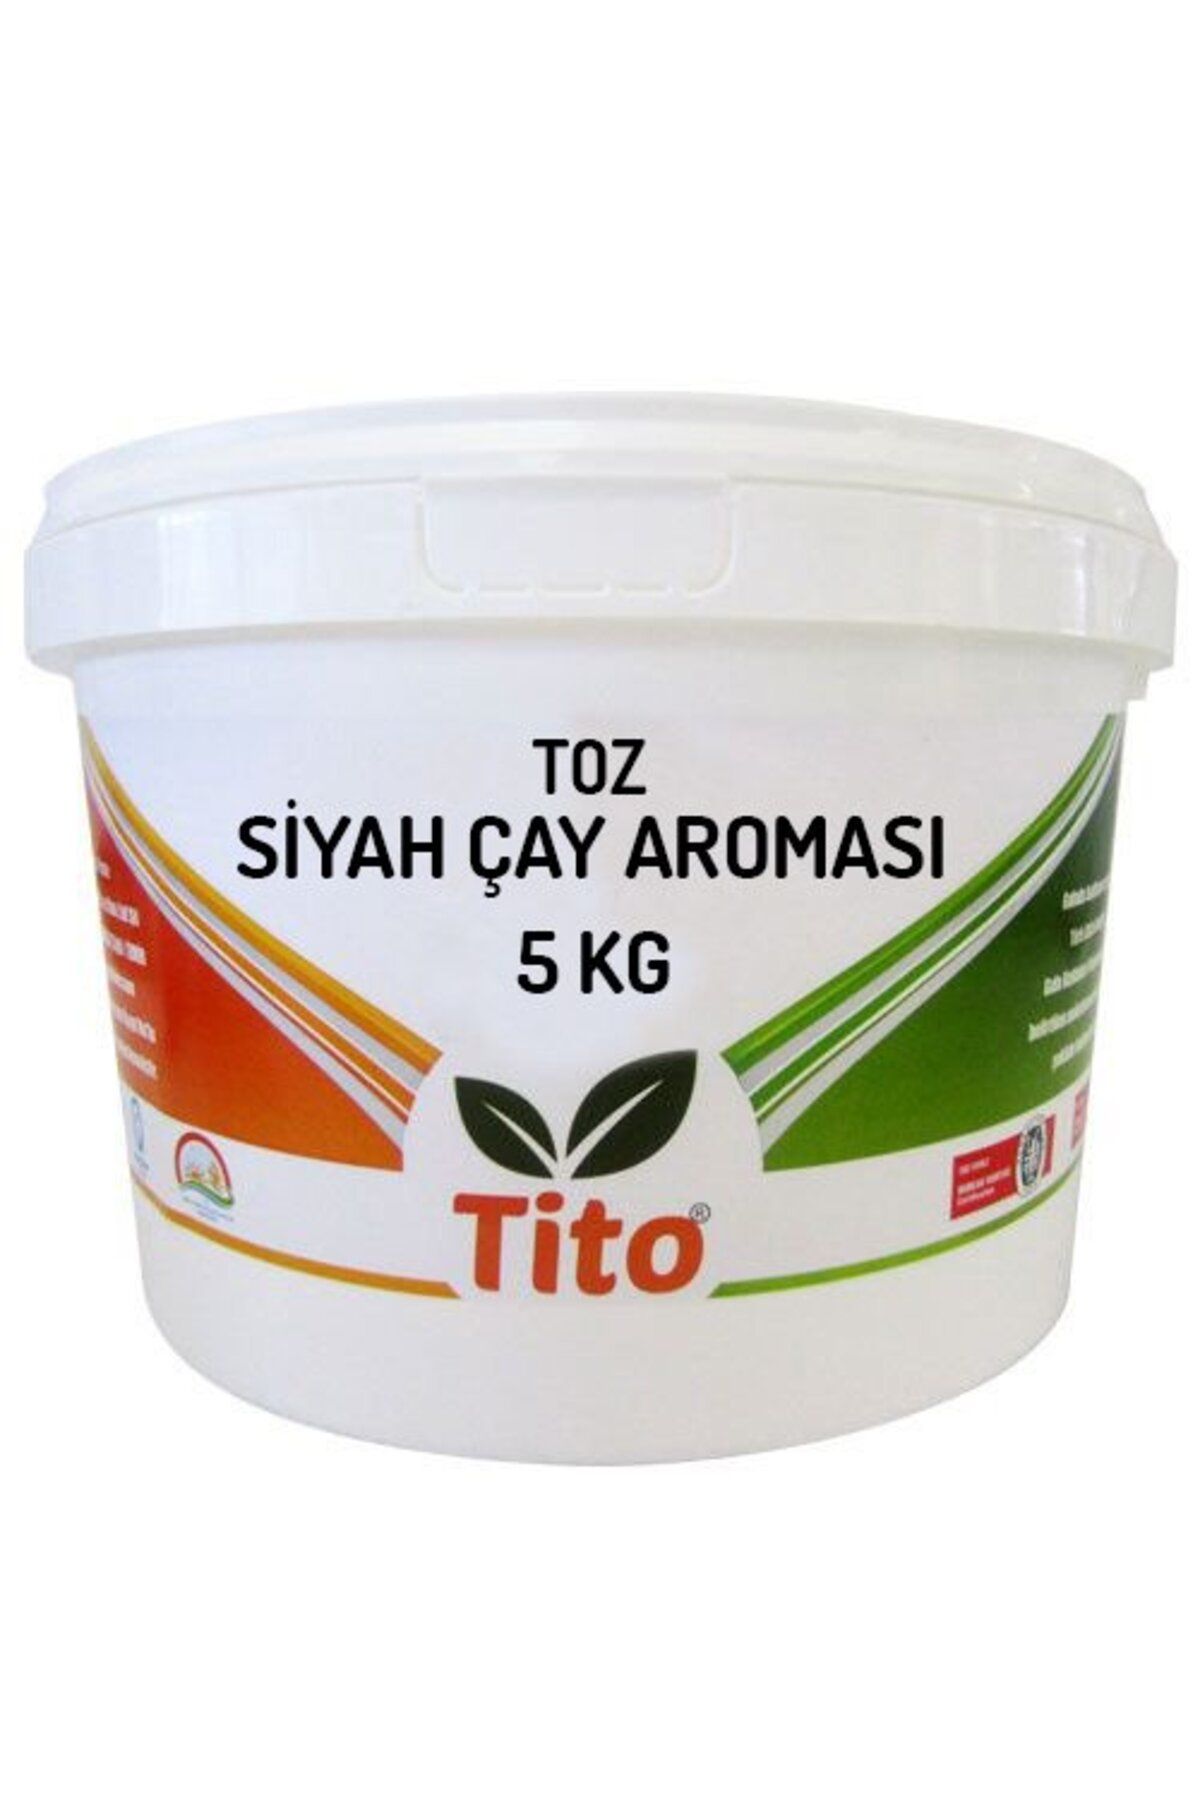 tito Toz Siyah Çay Aroması 5 Kg